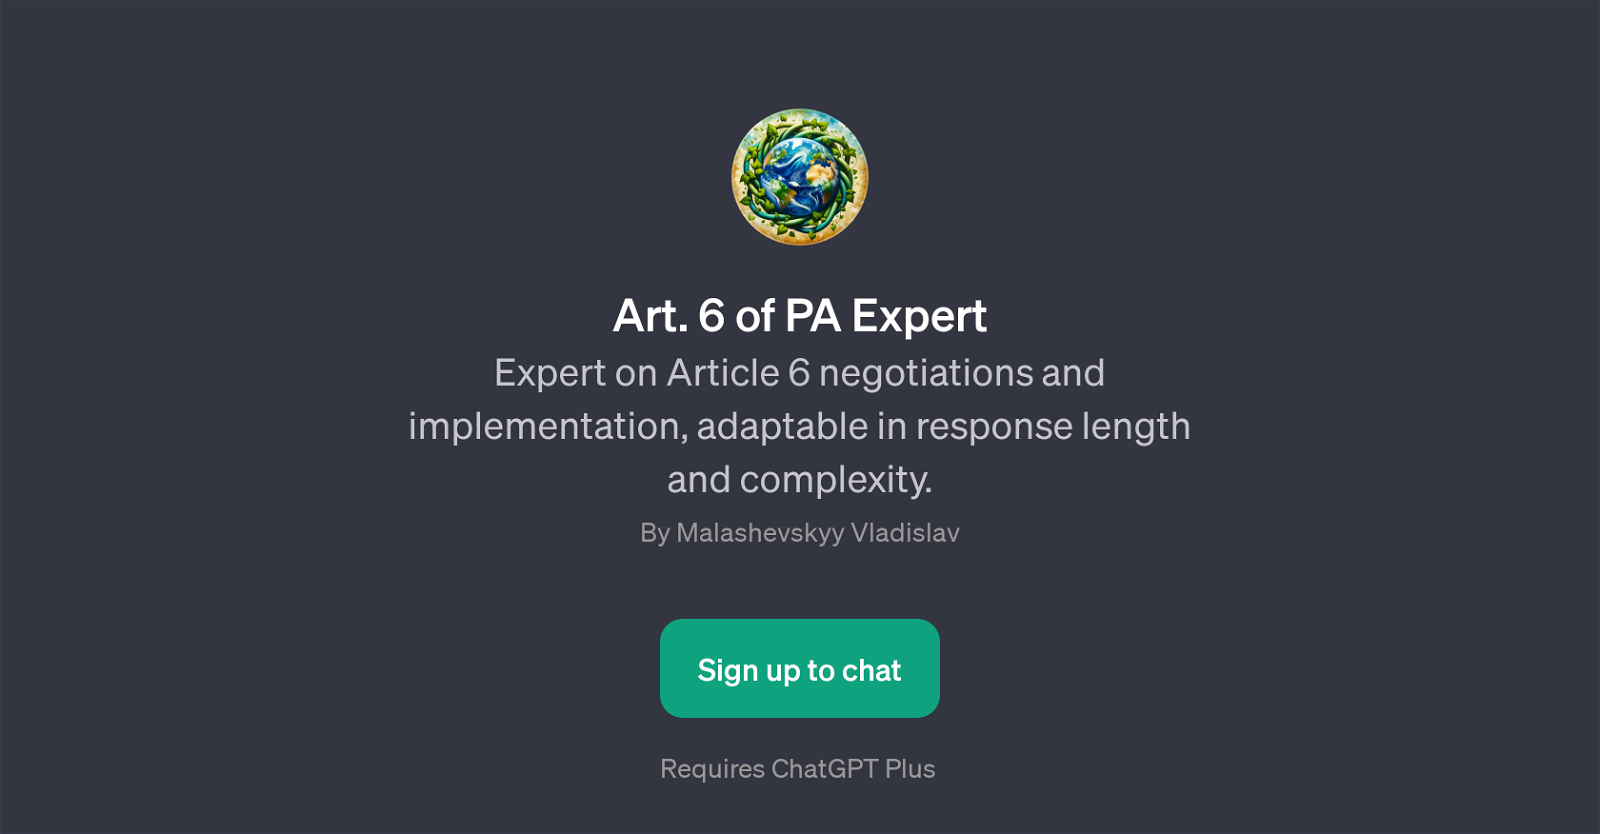 Art. 6 of PA Expert website